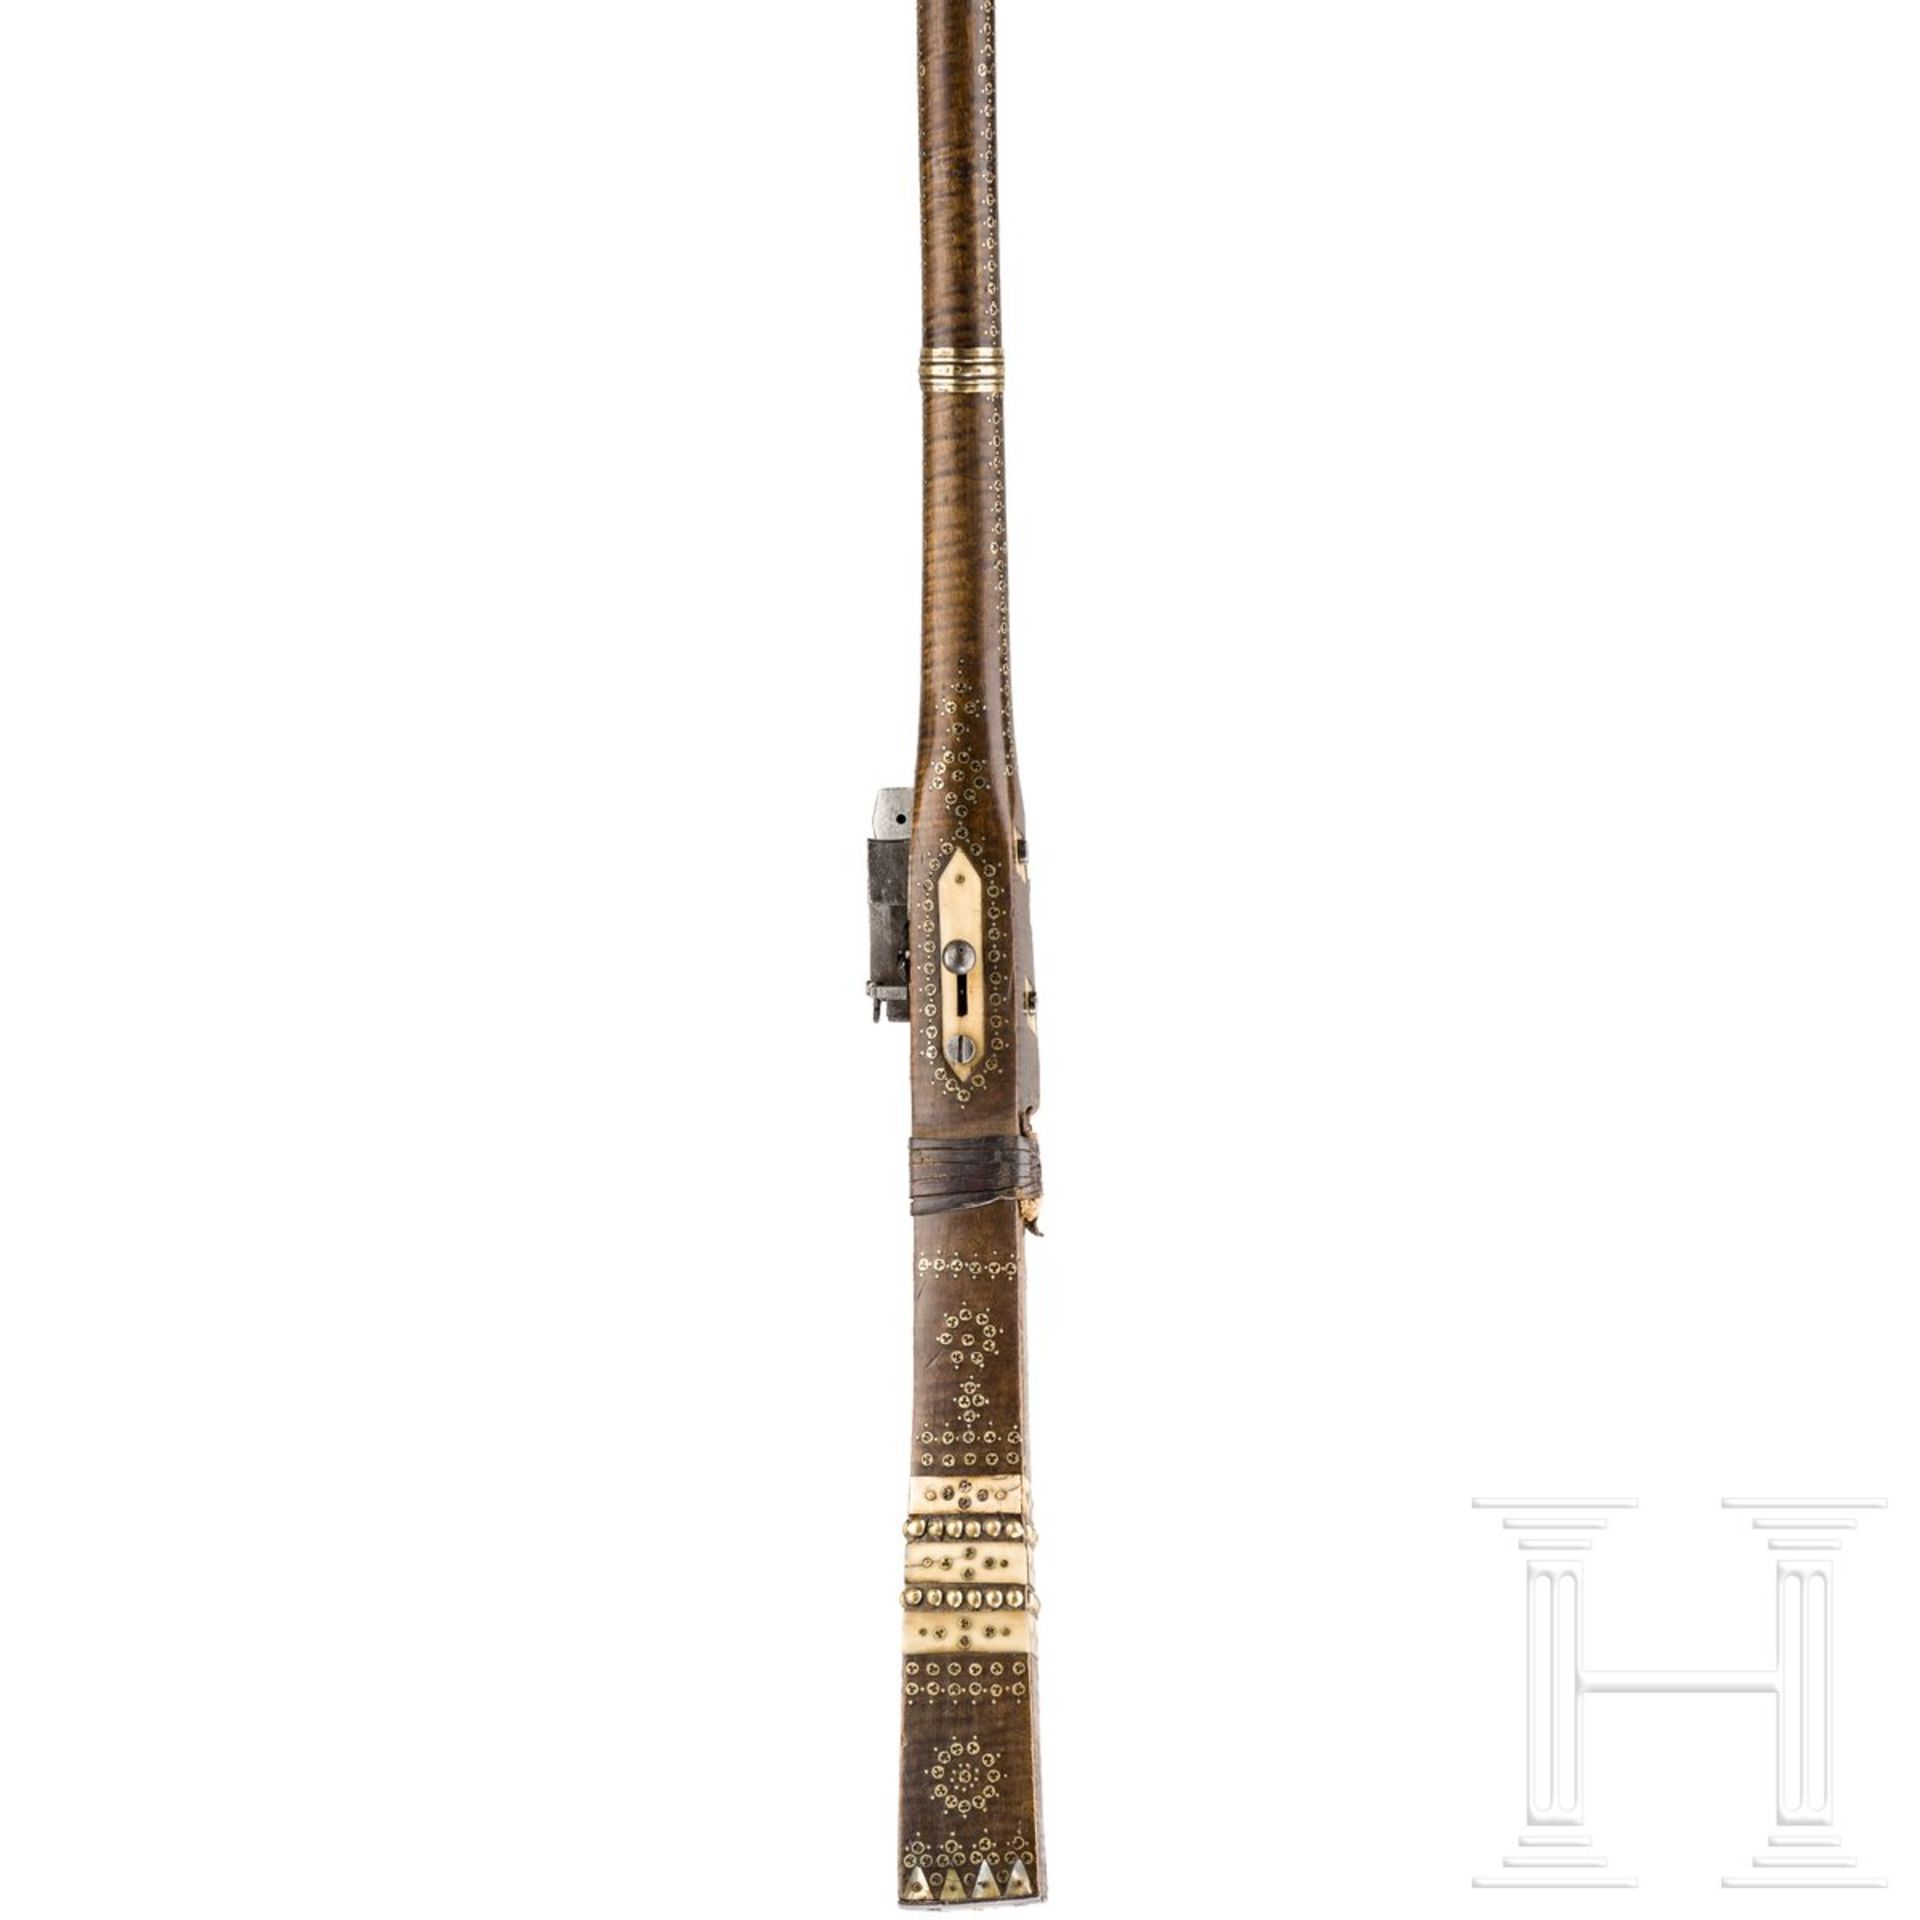 Miqueletbüchse (Tüfek), osmanisch, Ende 18. Jhdt. - Bild 3 aus 4